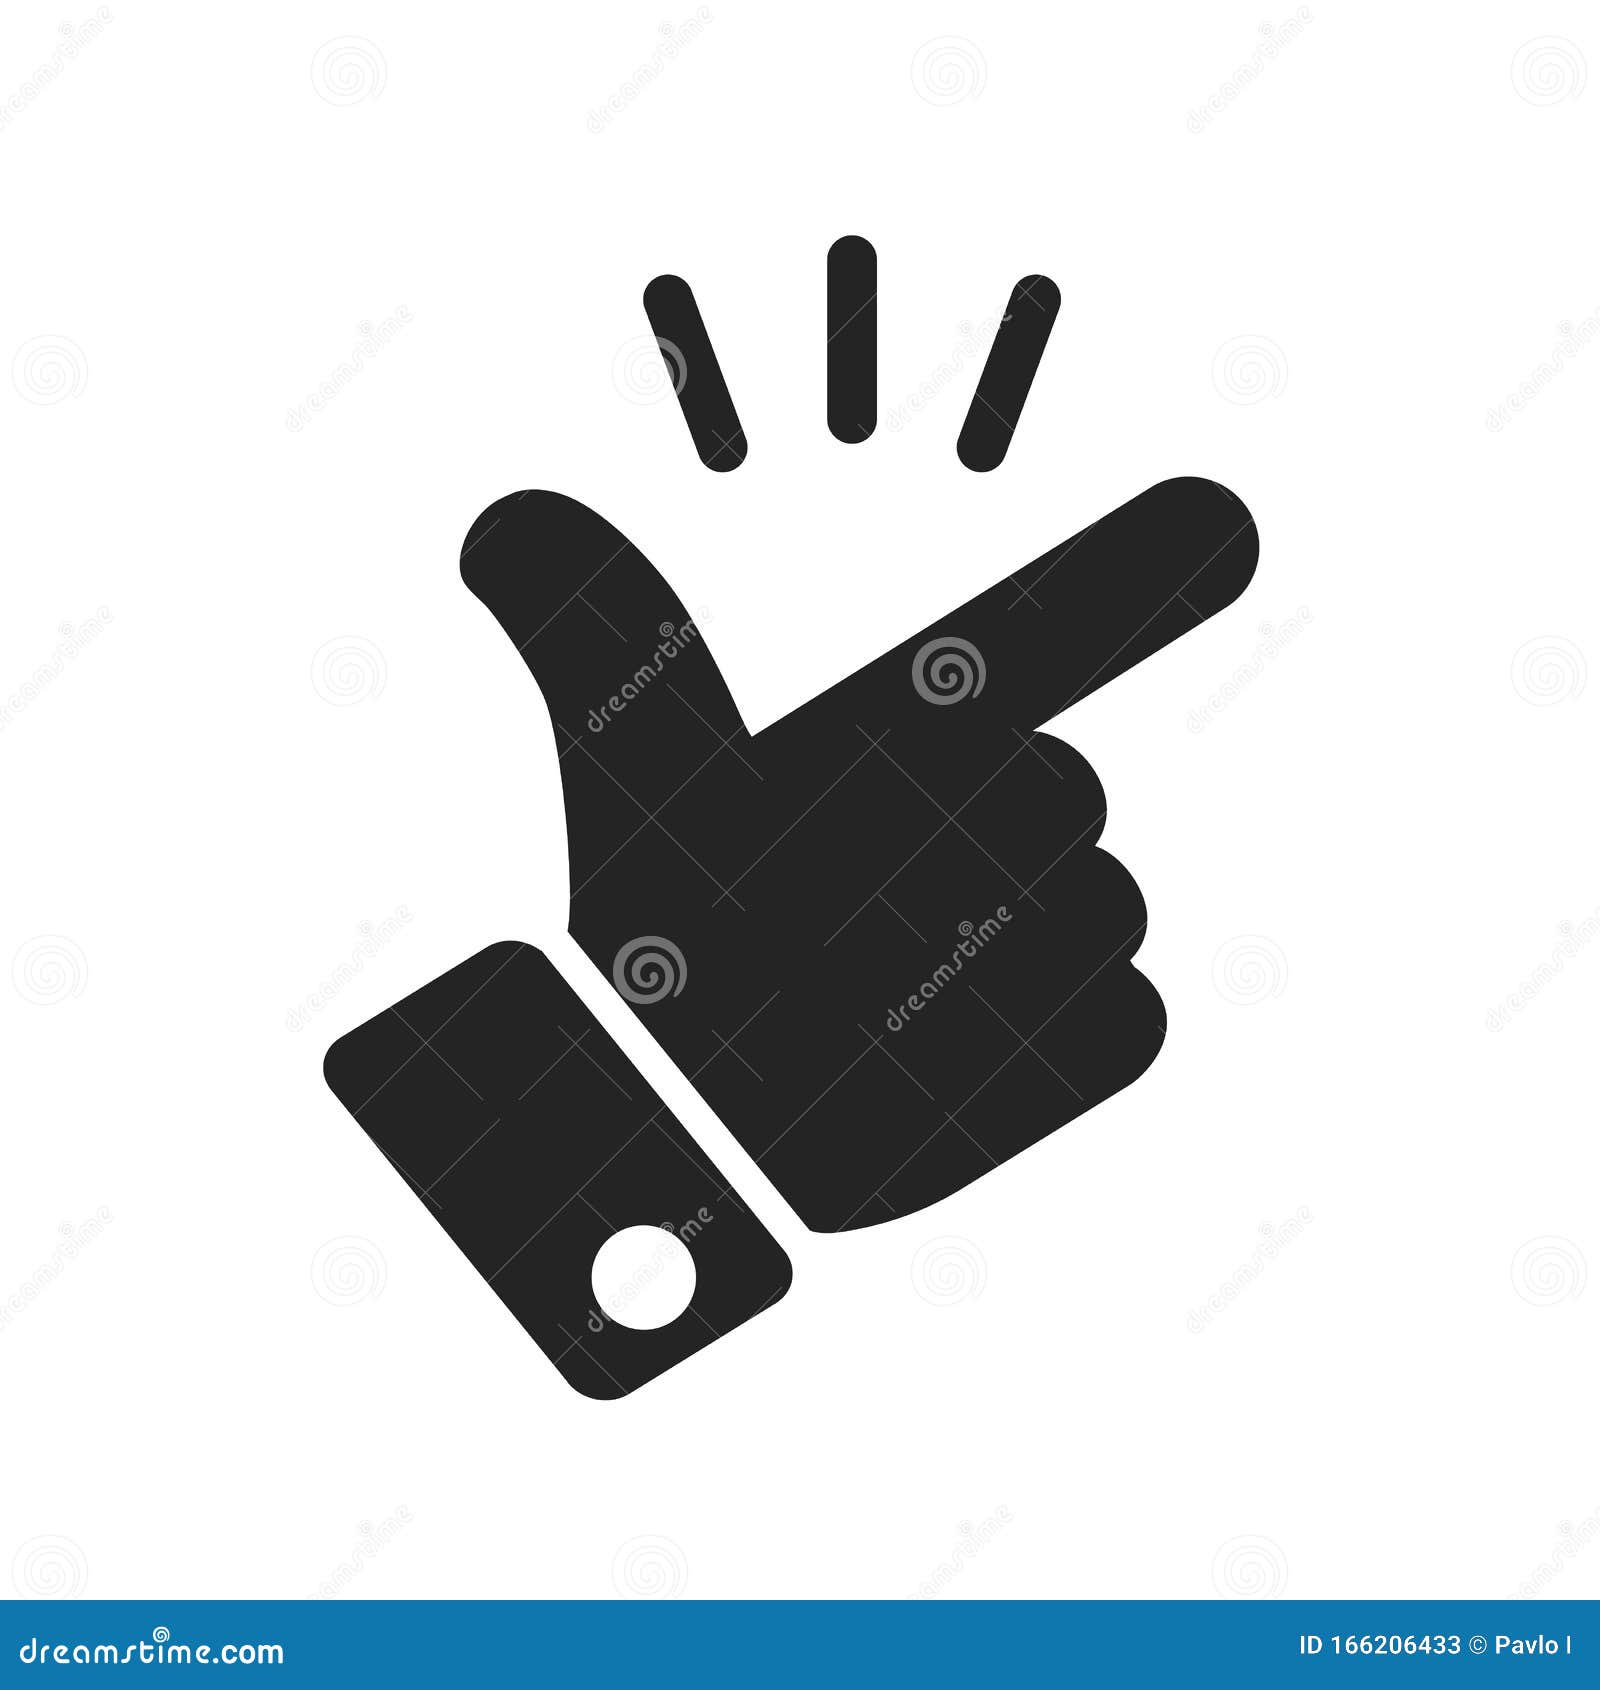 itÃ¢â¬â¢s simple - finger snap icon in flat style. easy icon. finger snapping click flick hand gesture sign - 